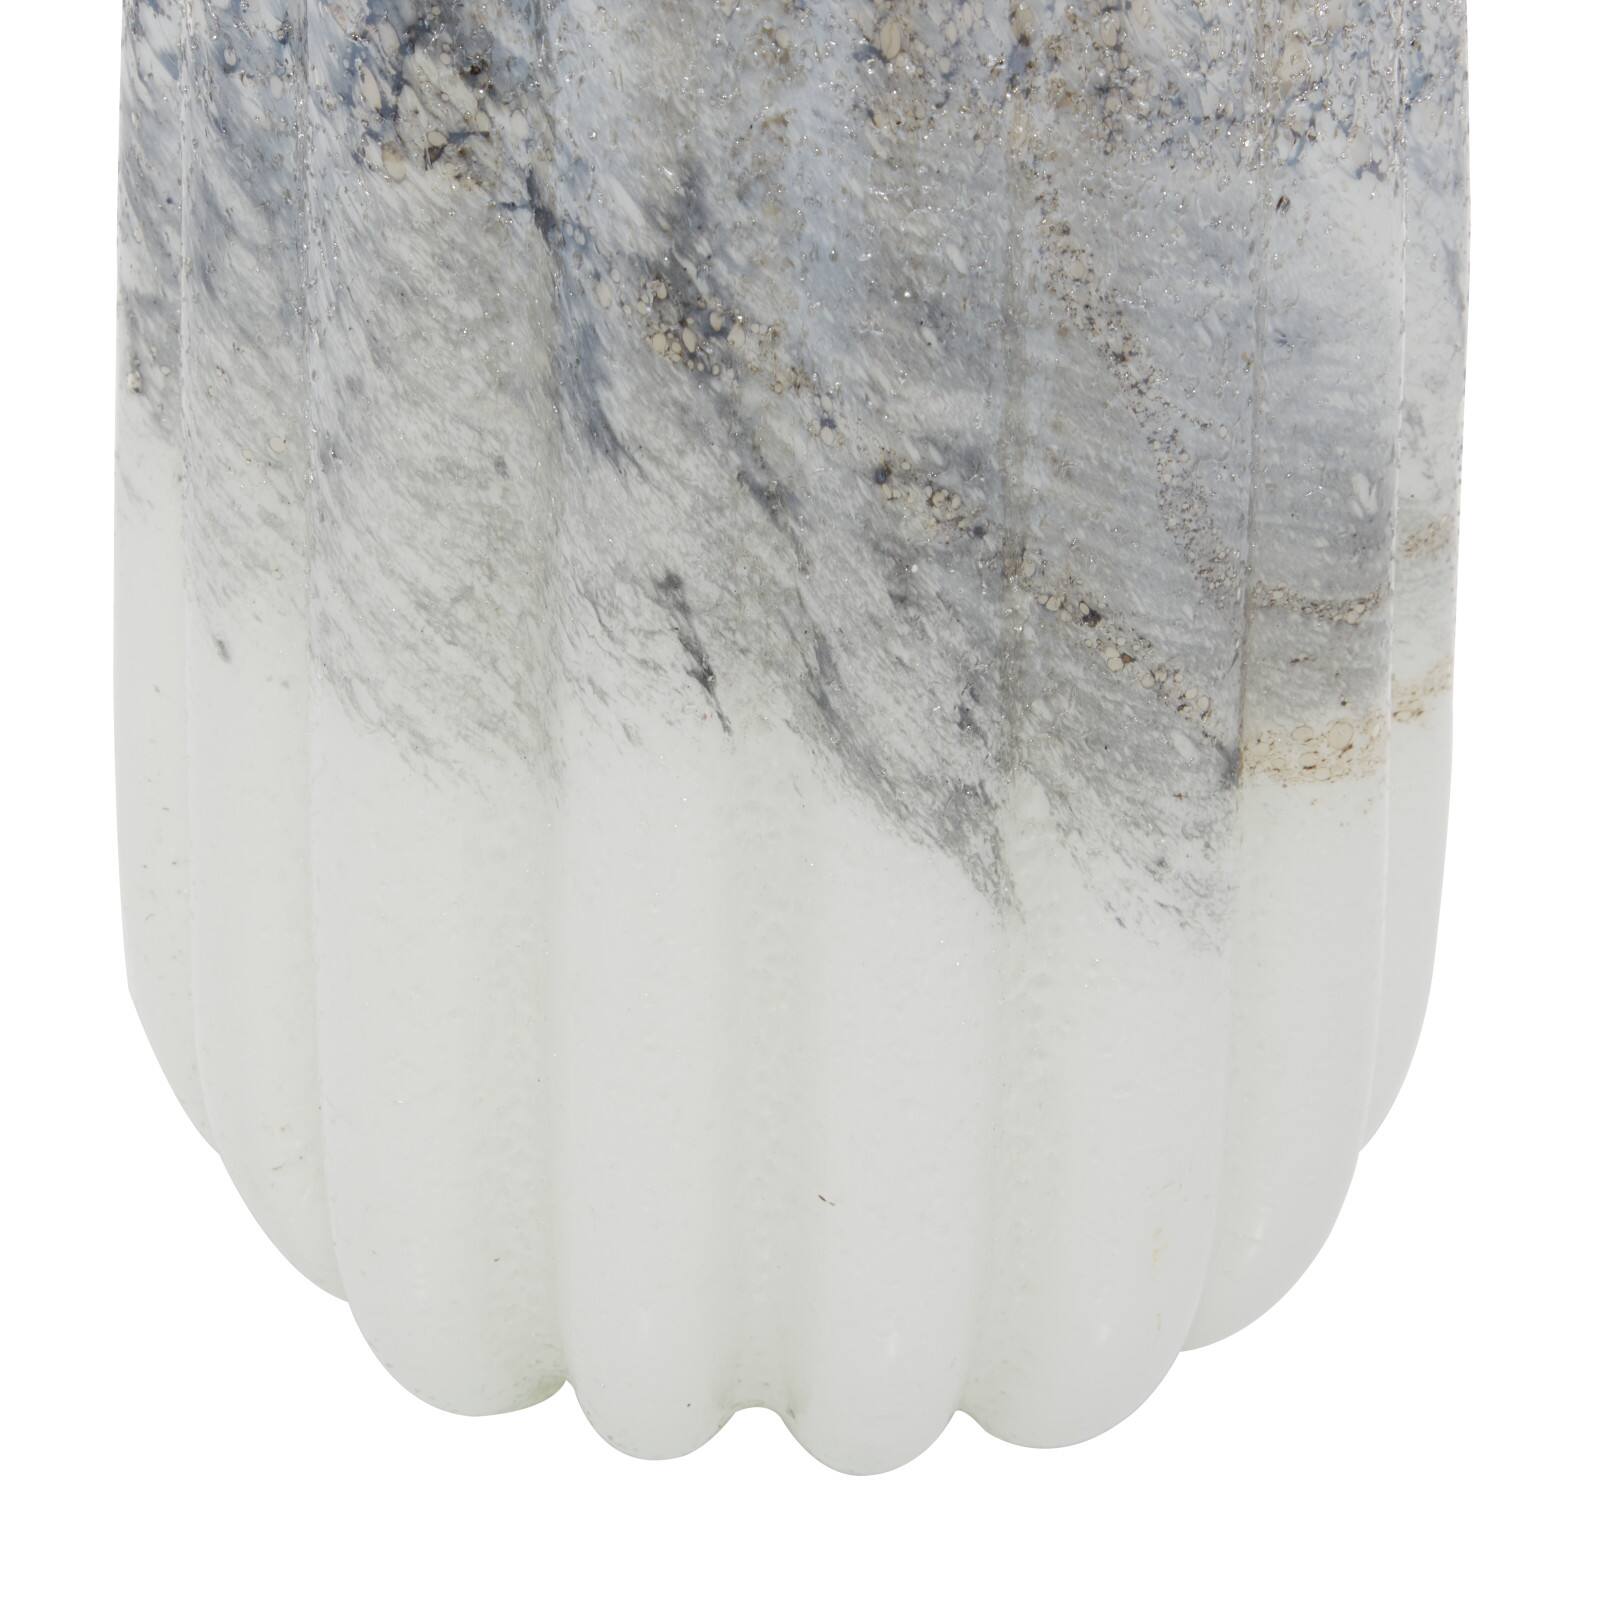 The Novogratz Gray Contemporary Glass Vase Set